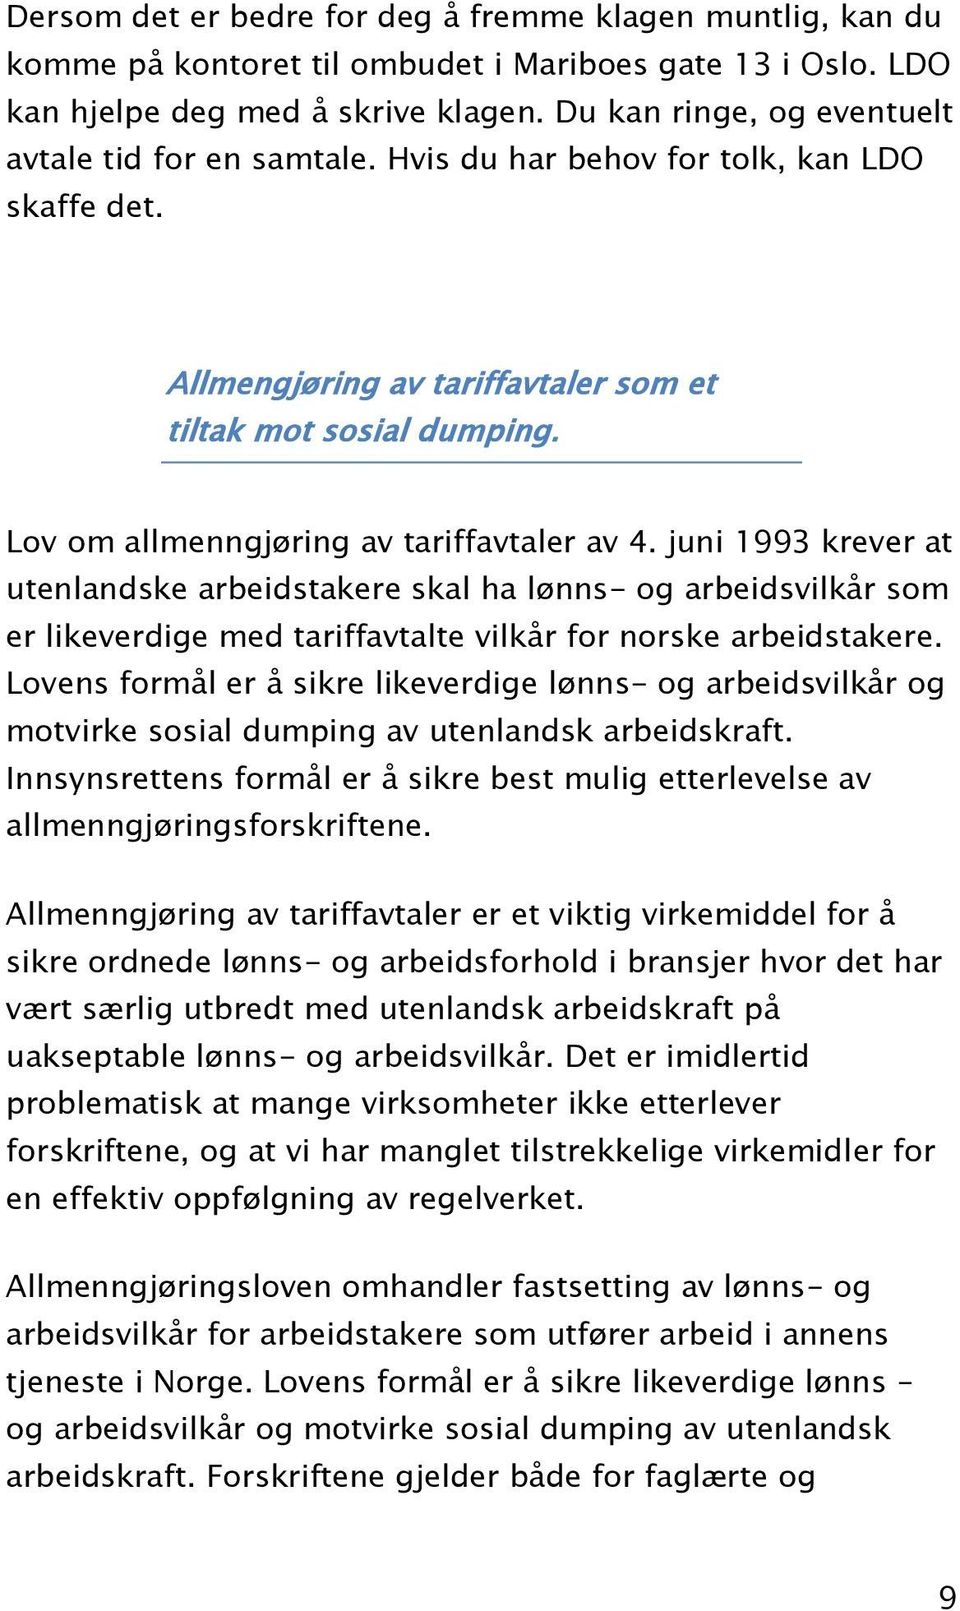 Lov om allmenngjøring av tariffavtaler av 4. juni 1993 krever at utenlandske arbeidstakere skal ha lønns- og arbeidsvilkår som er likeverdige med tariffavtalte vilkår for norske arbeidstakere.